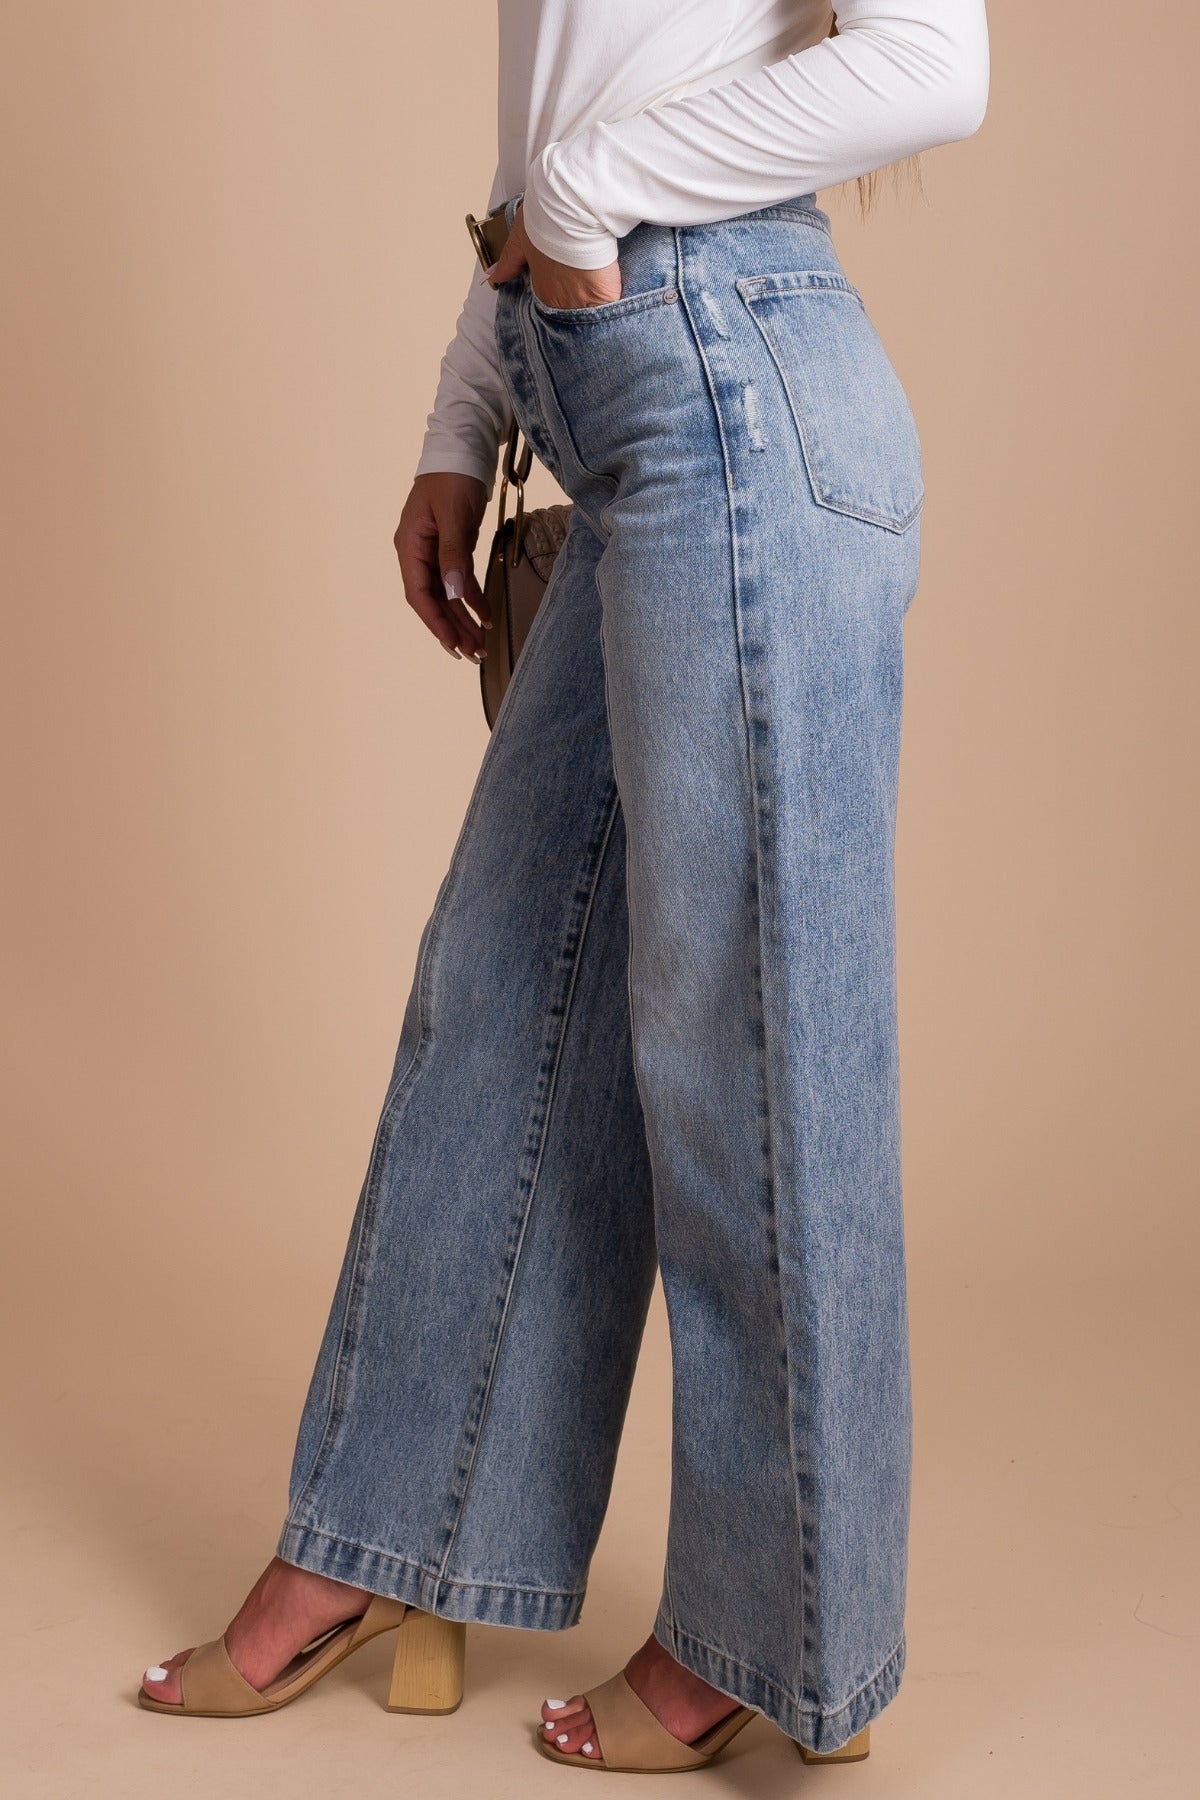 90s Wide Leg Light Wash Denim Jeans for Women